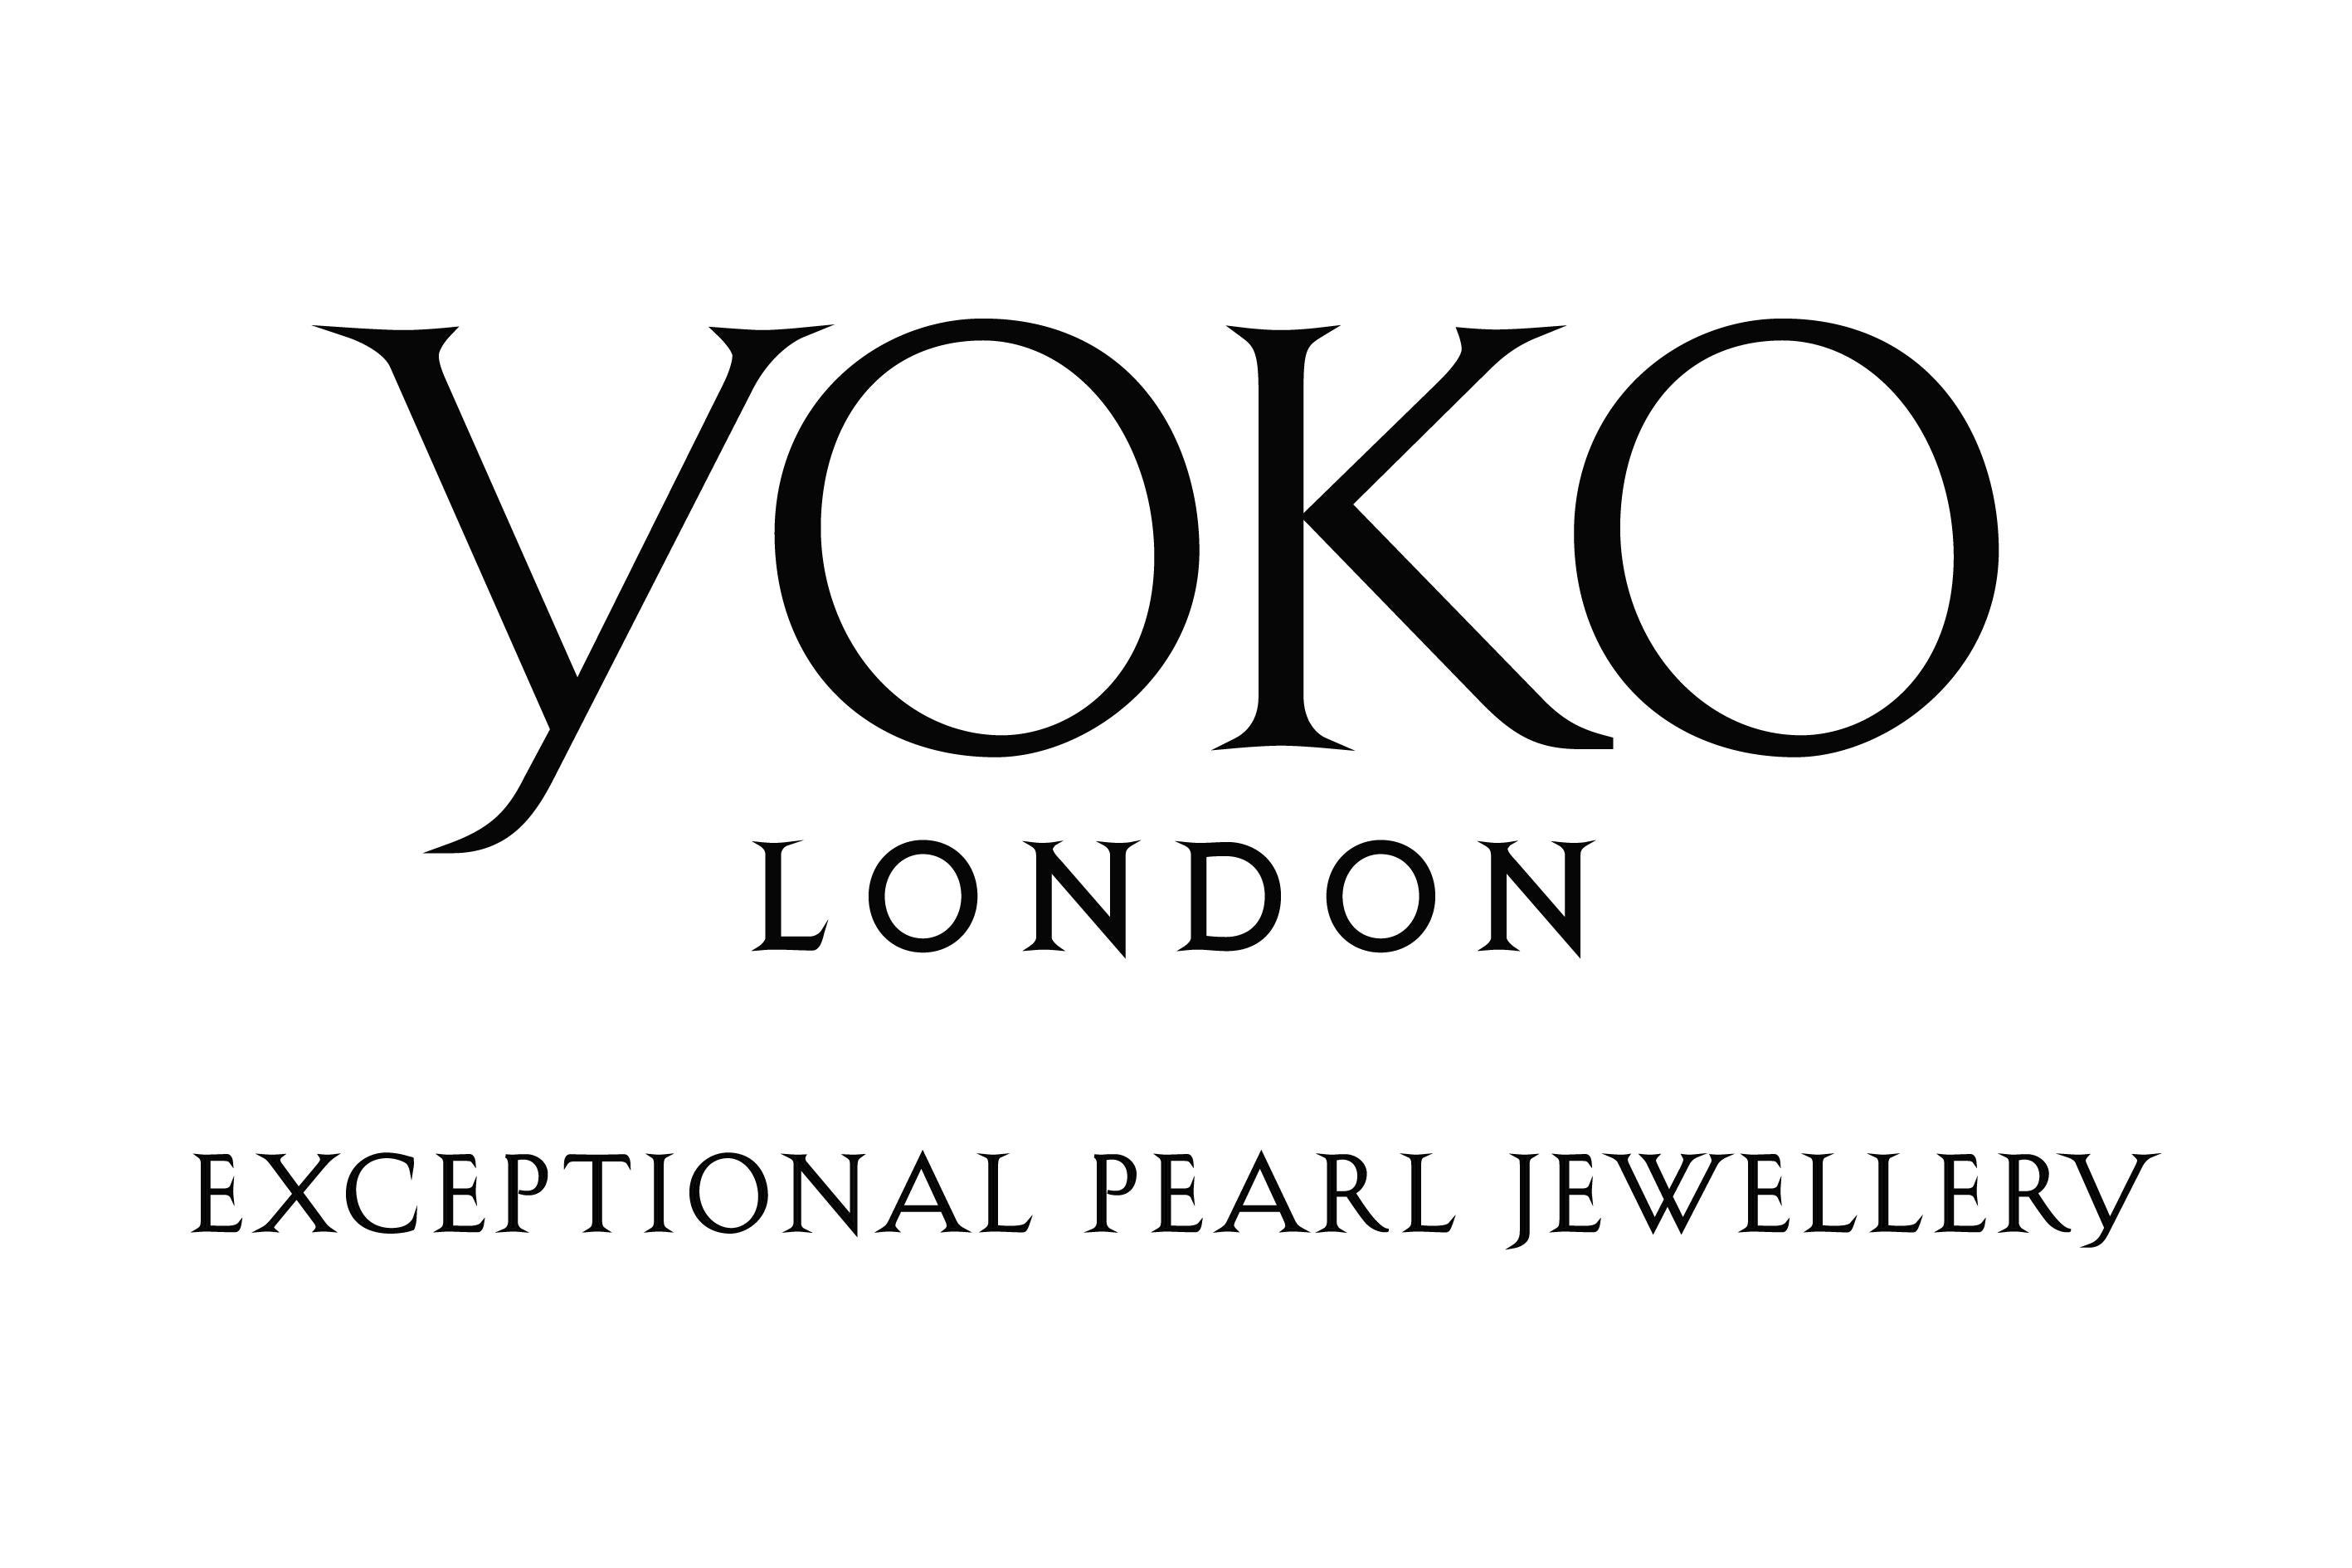 Round Cut Yoko London Freshwater Pearl and Diamond Ring in 18 Karat White Gold